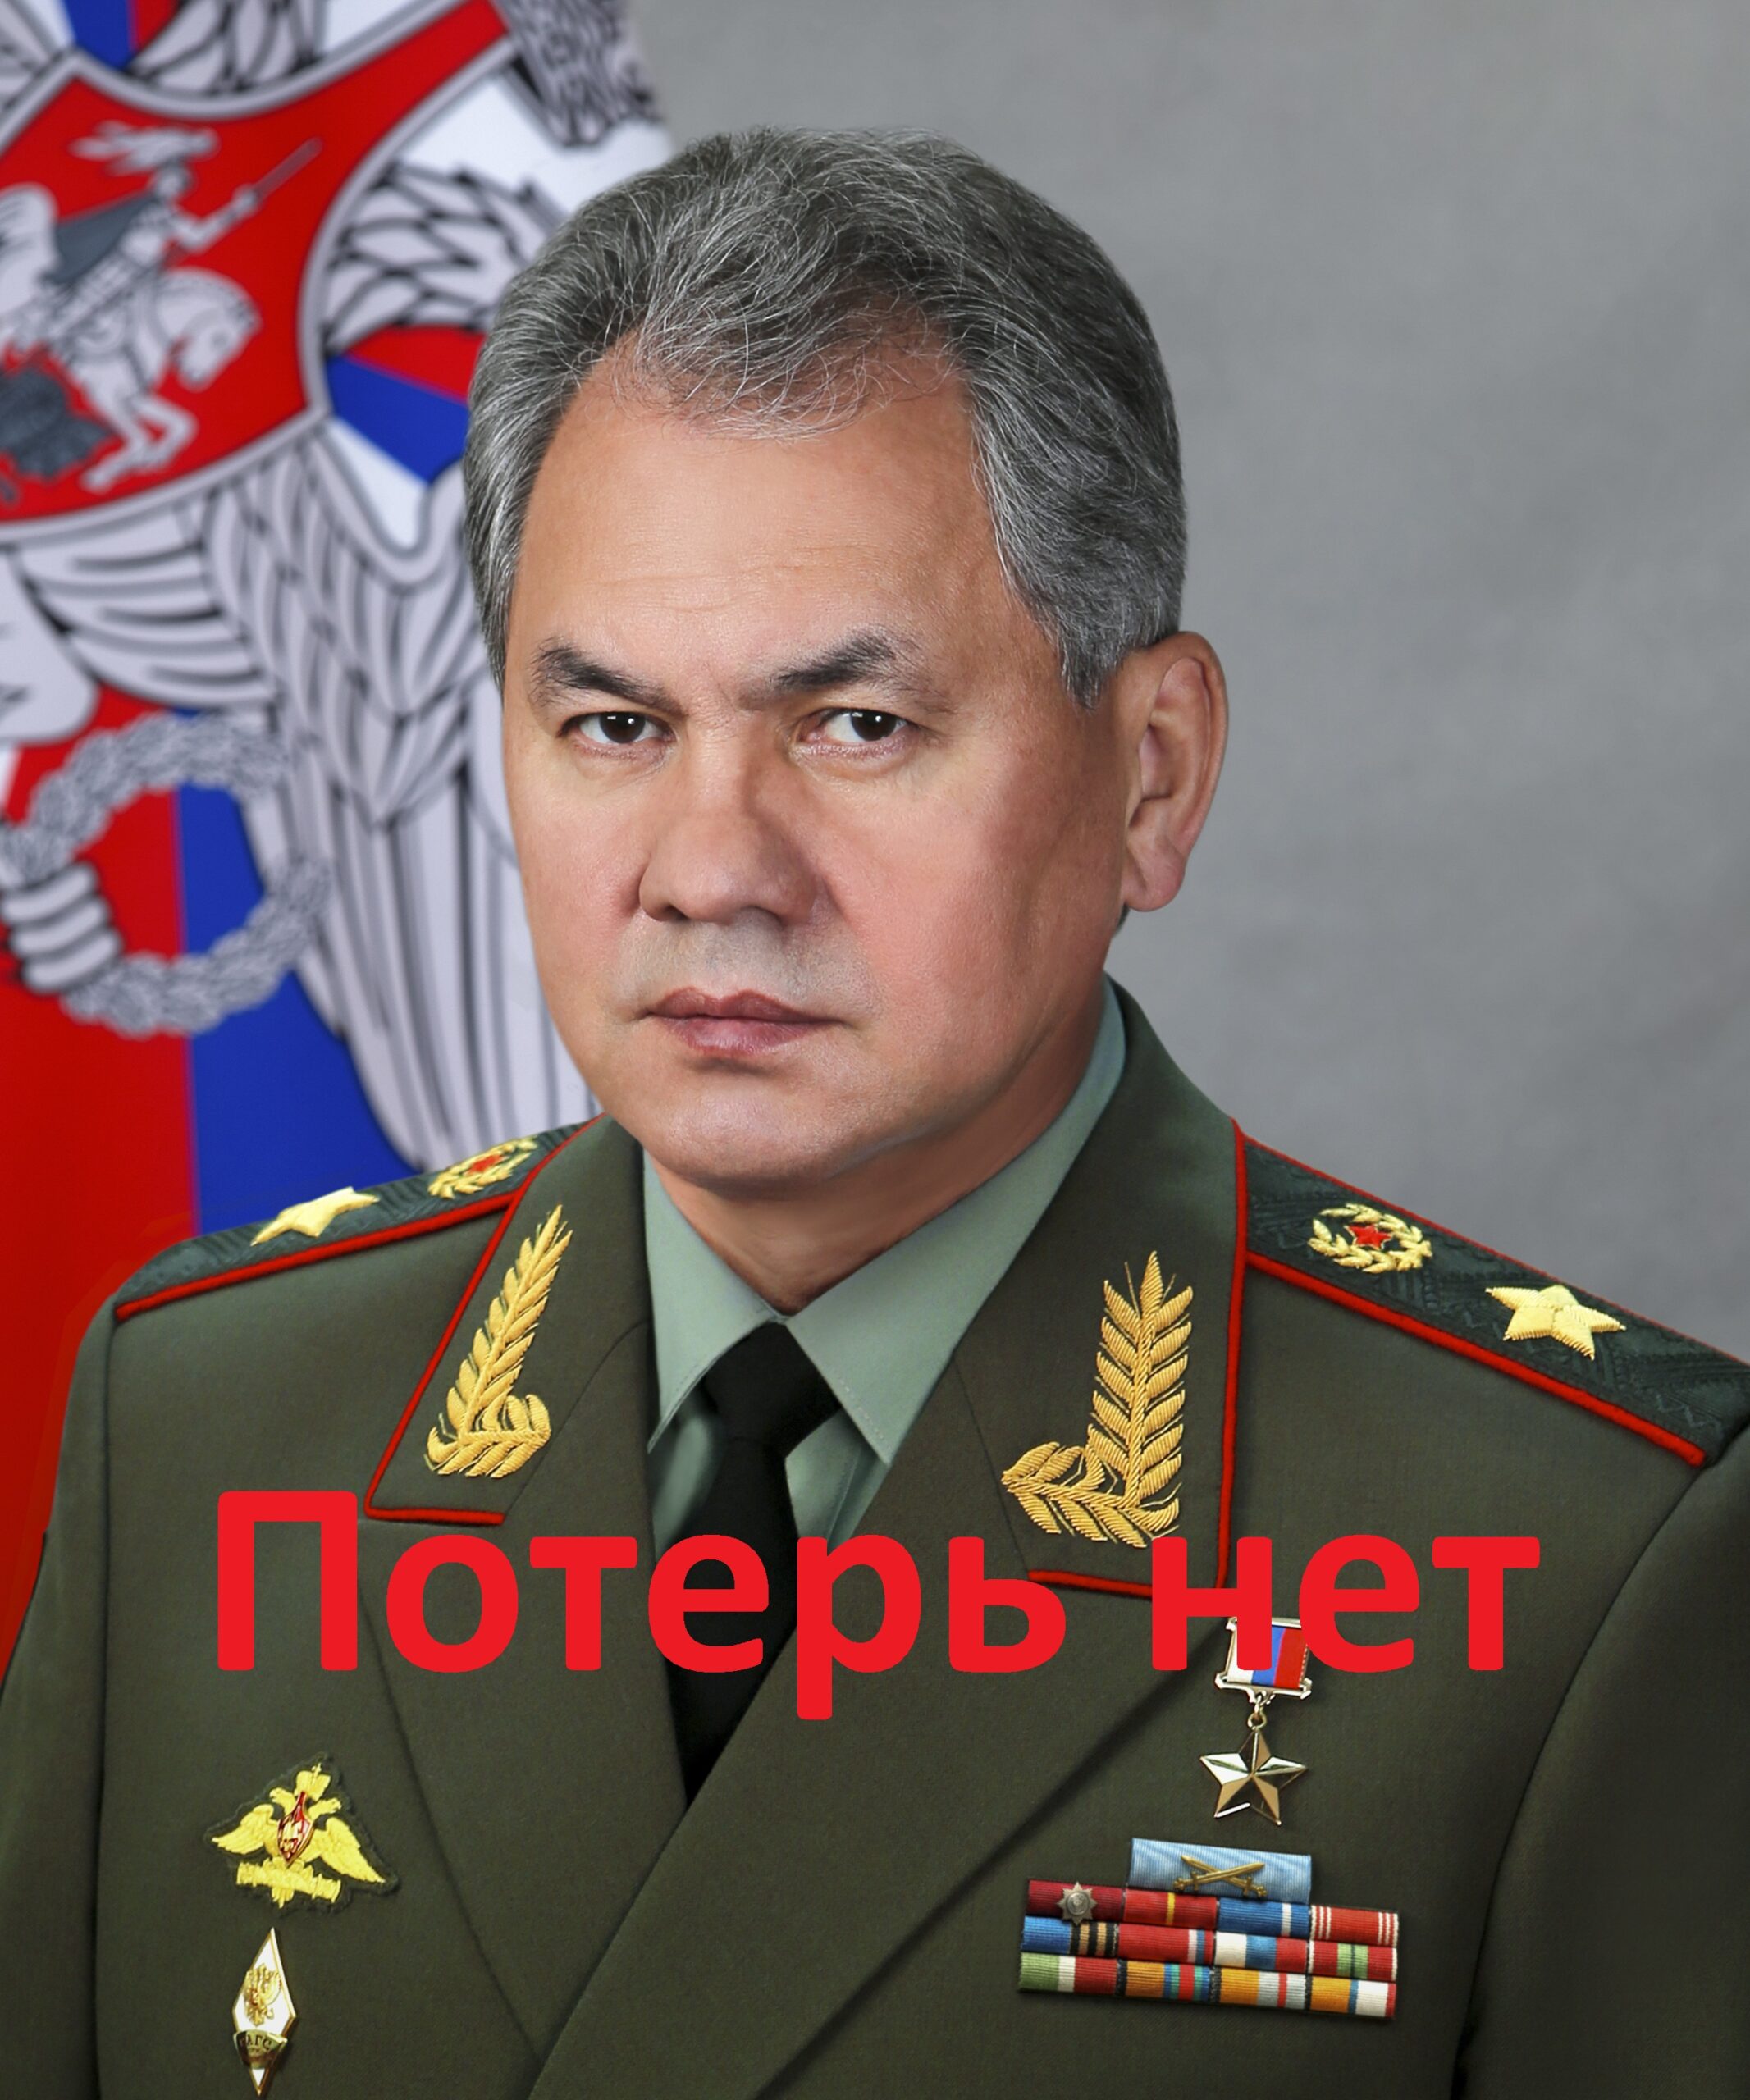 “Потерь нет” – збройні сили РФ досі не визнають бойових втрат